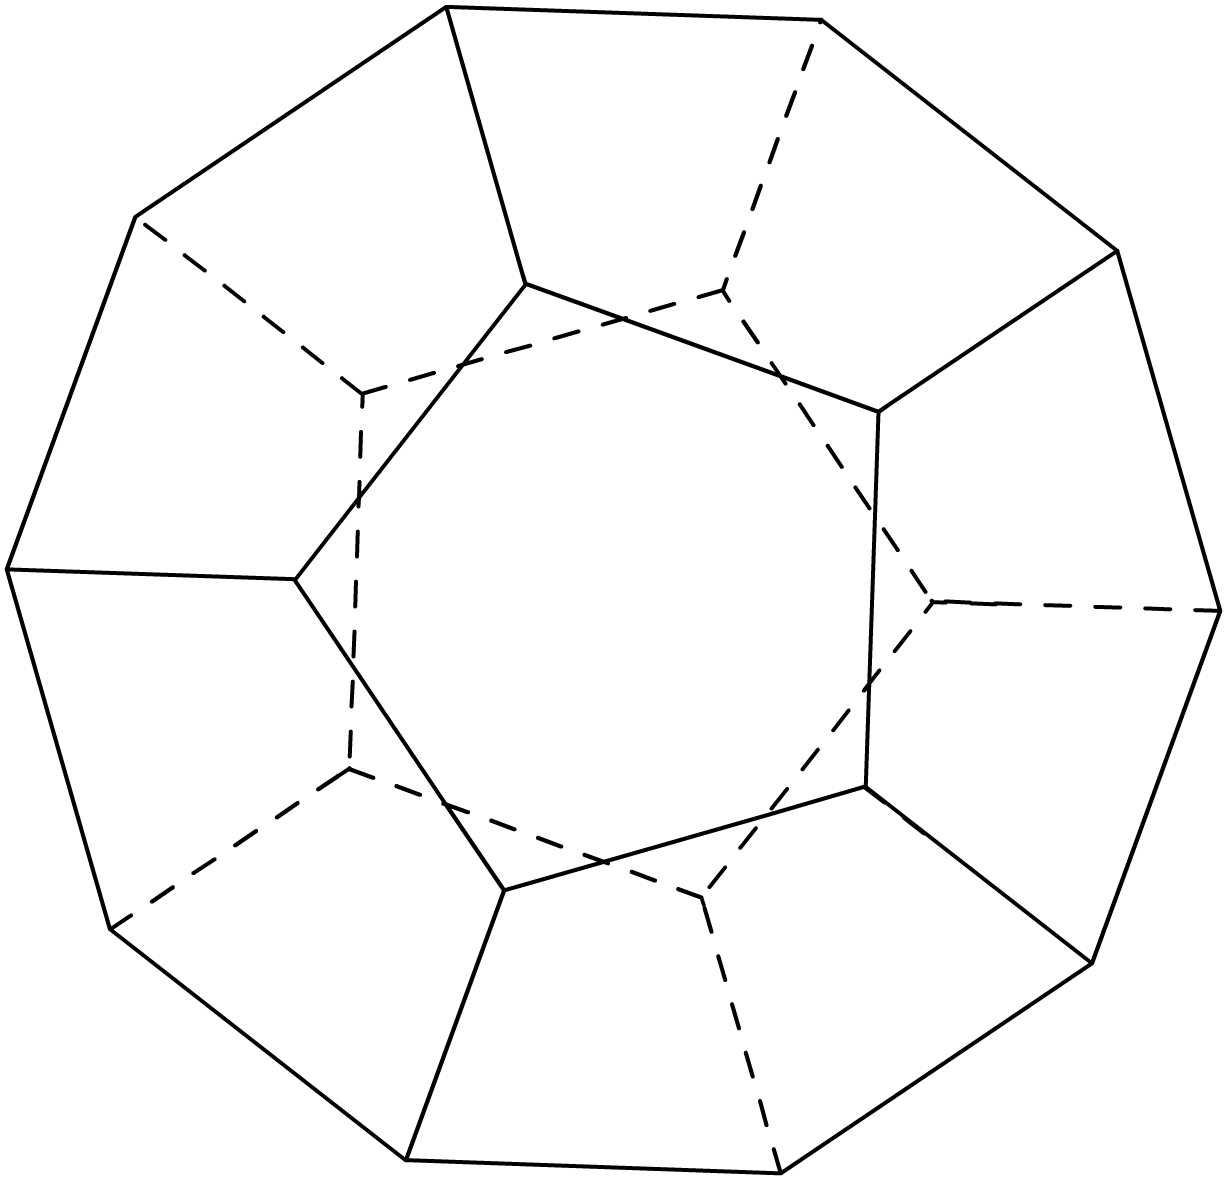 Виды шестиугольников. Правильные многогранники додекаэдр. Пентаэдр пятигранник. Додекаэдр (двенадцатигранник). Пентагональный додекаэдр.